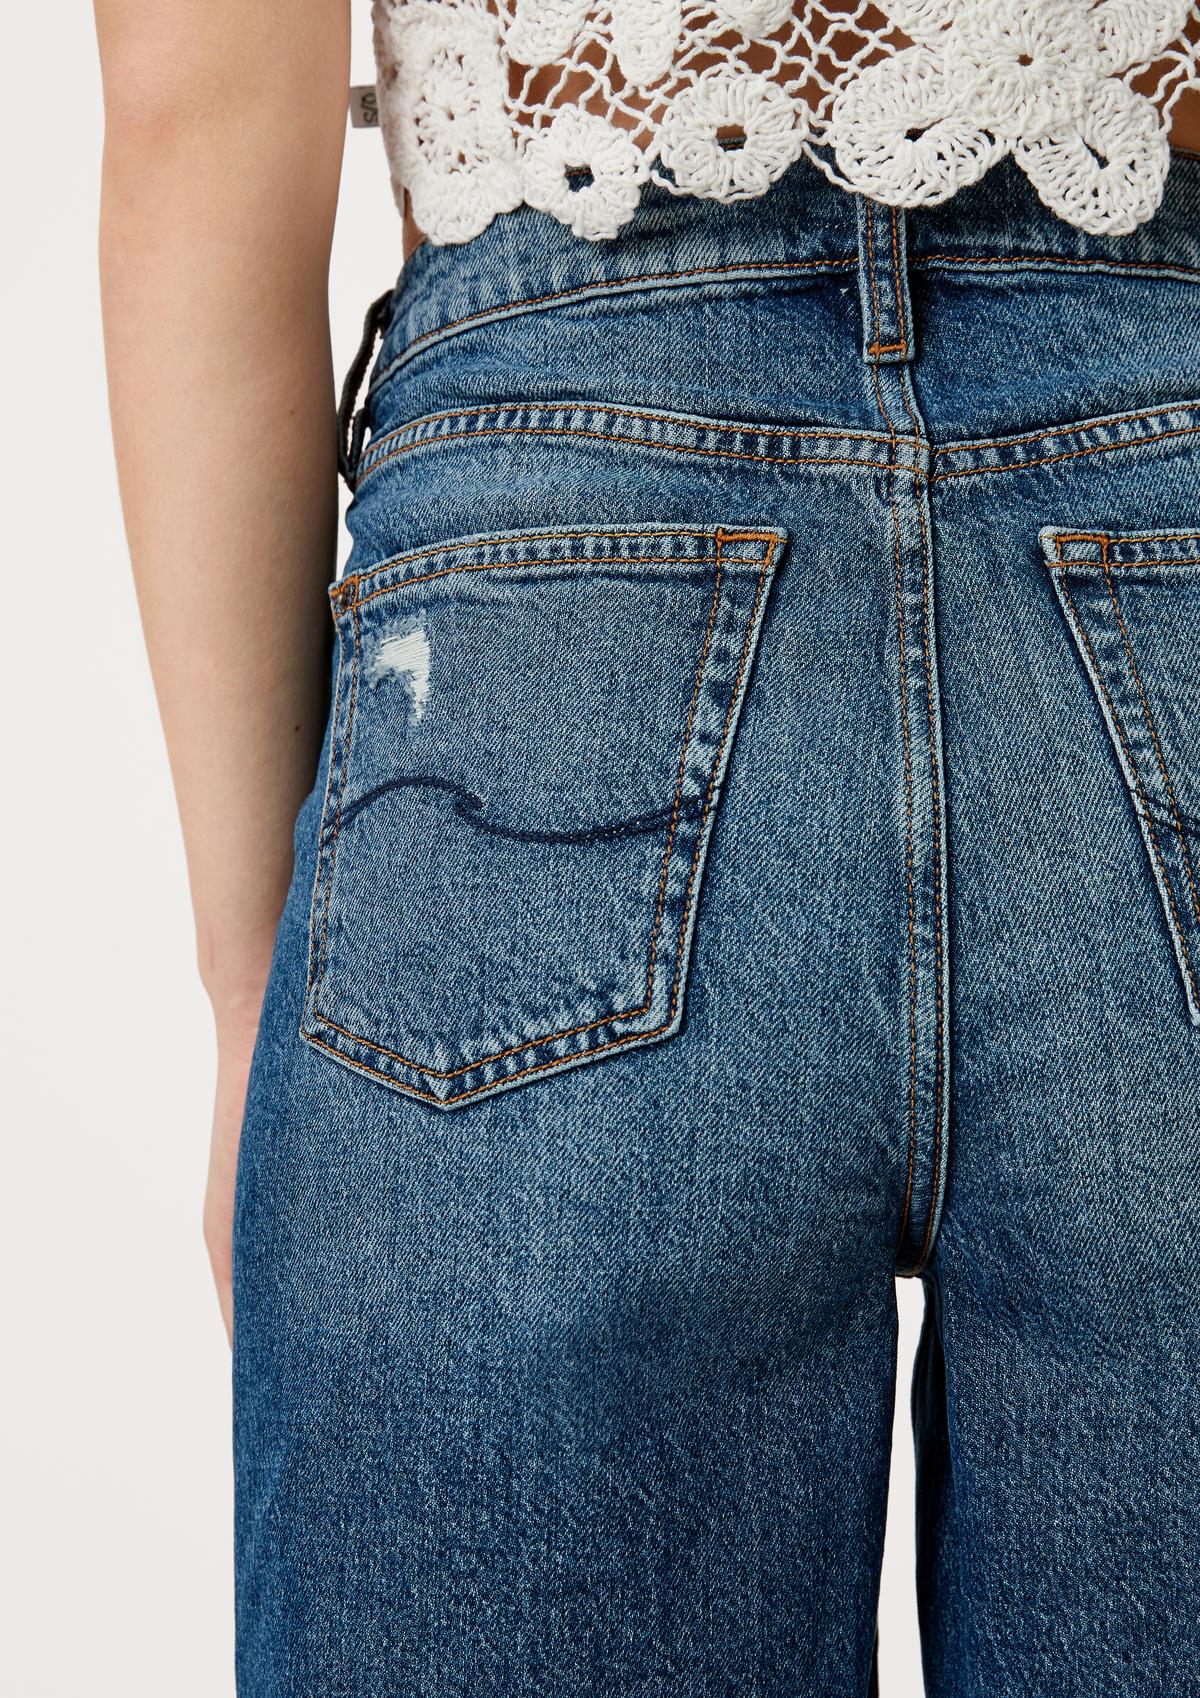 s.Oliver Jeans bermuda hlače/kroj Regular Fit/High Rise/ravne hlačnice